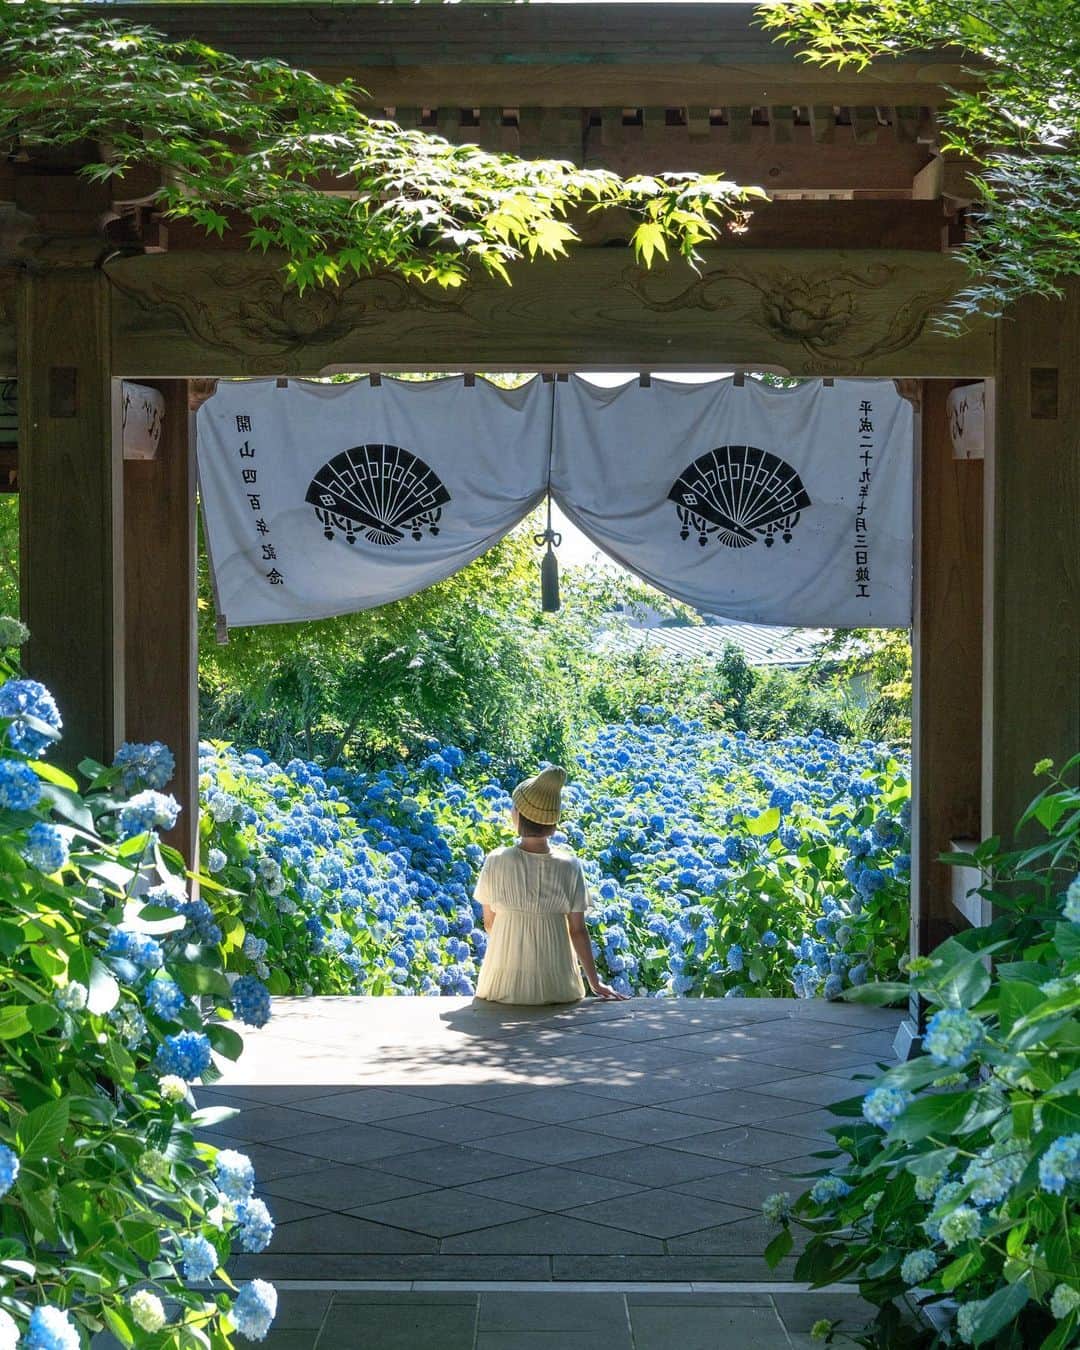 詩歩のインスタグラム：「📷 20th June 2023 📍 秋田県 アジサイ寺 雲昌寺 / Unsho-ji temple, Akita Japan   現在見頃を迎えている #雲昌寺 さんのアジサイ。  紫陽花の名所は各地にあれど、こんなに青色で統一され、しかも海のように広がる光景が見下ろせる場所はめったにありません。この深みある独特の色合いは #雲昌寺ブルー と呼ばれています🎨  この花々は副住職の古仲さんがたった1株から挿し木で増やしていかれたのだけど、床のように、また壁のように一面に広がる花は一体全体どうなっているんだ！？と思ってしまうほど😂  私が訪れた日は入口から山門へ向かうところが満開だったので、山門越しに撮ってみたのが1枚目📷　今年のアジサイ拝観は7月17日までみたいです🌼  秋田グルメといえば”オババさん”が”ヘラ”で作る #ババヘラ が有名！雲昌寺オリジナルの紫陽花ババヘラも食べれるからCheckしてみてね🍦サッパリしてておいしい😋  秋田県の他の写真はこのタグでまとめています / Posts of this area can be found in this tag.→ #shiho_akita   Although there are many places famous for #hydrangeas throughout Japan, it is quite rare to find a place so uniformly colored blue. Mr. Konaka, the deputy chief priest, has increased the number of plants from only one to 1,500 by taking cuttings, and the flowers spread all over the place like a floor or a wall. I was amazed at how the flowers spread all over the place like a floor or a wall.  The #hydrangea season is open until July 17. Akita Gourmet is famous for #Babahera , which is made by "Obaba(means granma) " with a “Hera (spatula) “! You can try Unshoji's original hydrangea babahera so check it out!  ©︎Shiho/詩歩」